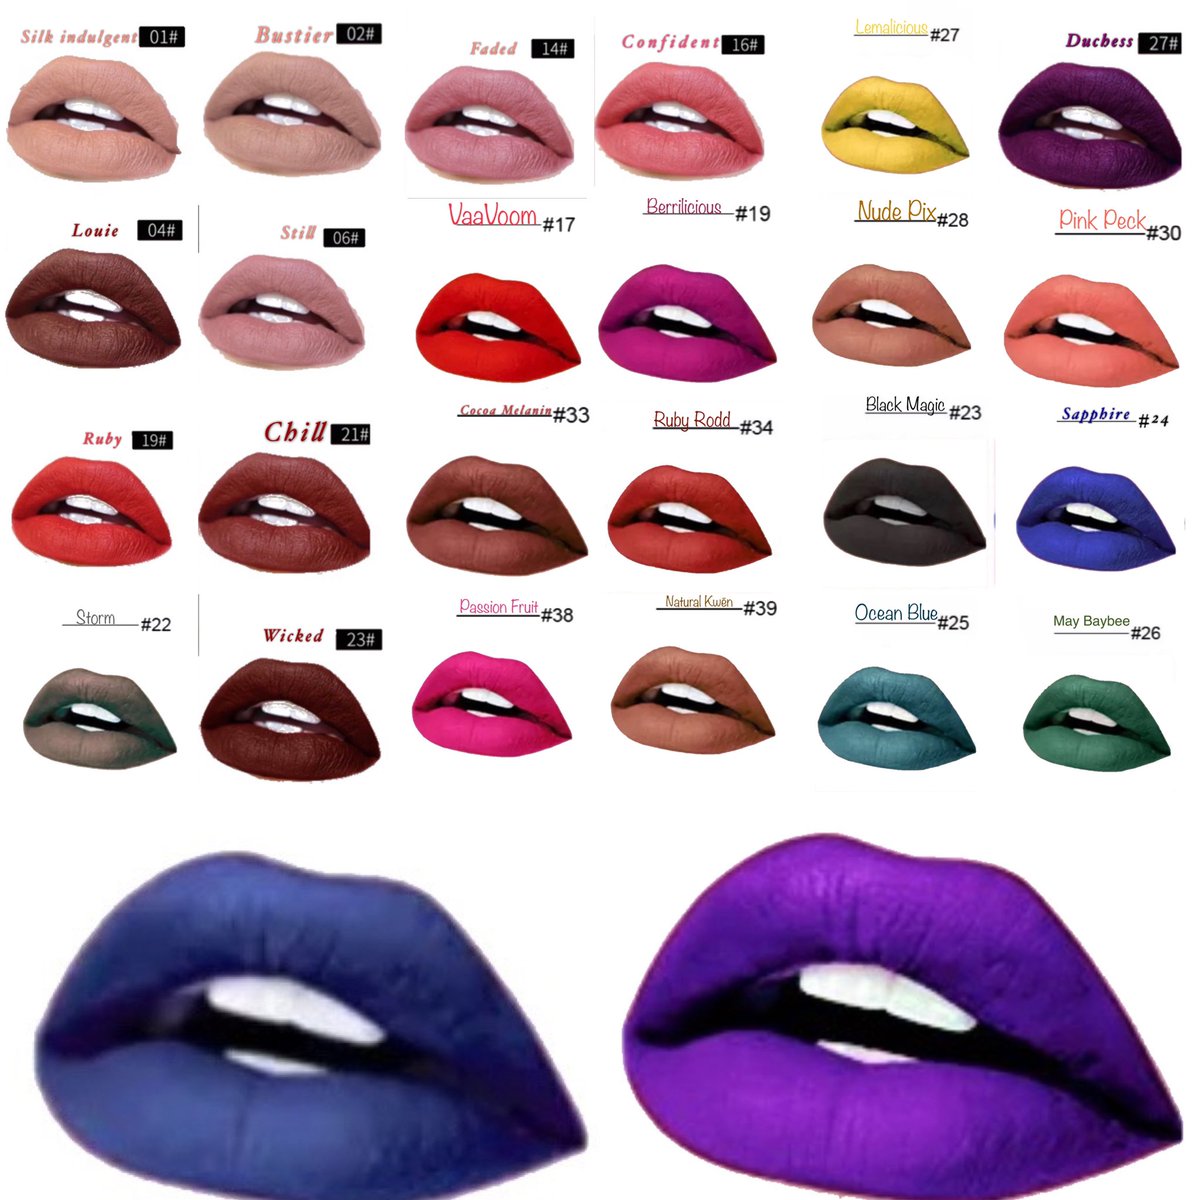 ⚠️ALL LIPS BUY2 GET 1 FREE⚠️
👄 Kwēn lips
#blackownedcosmetics #LipGloss #Beauty #Lips #Makeup #Kwen  #BrazilianBundles #VirginHumanHair #KwenCosmetix  #Flawless #lashes  #Cardib #BlackGirlMagic #Palettes #lipstick  #Viral #mattelipstick #KwēnCosmetixBeauty #Beauty #ExplorePage